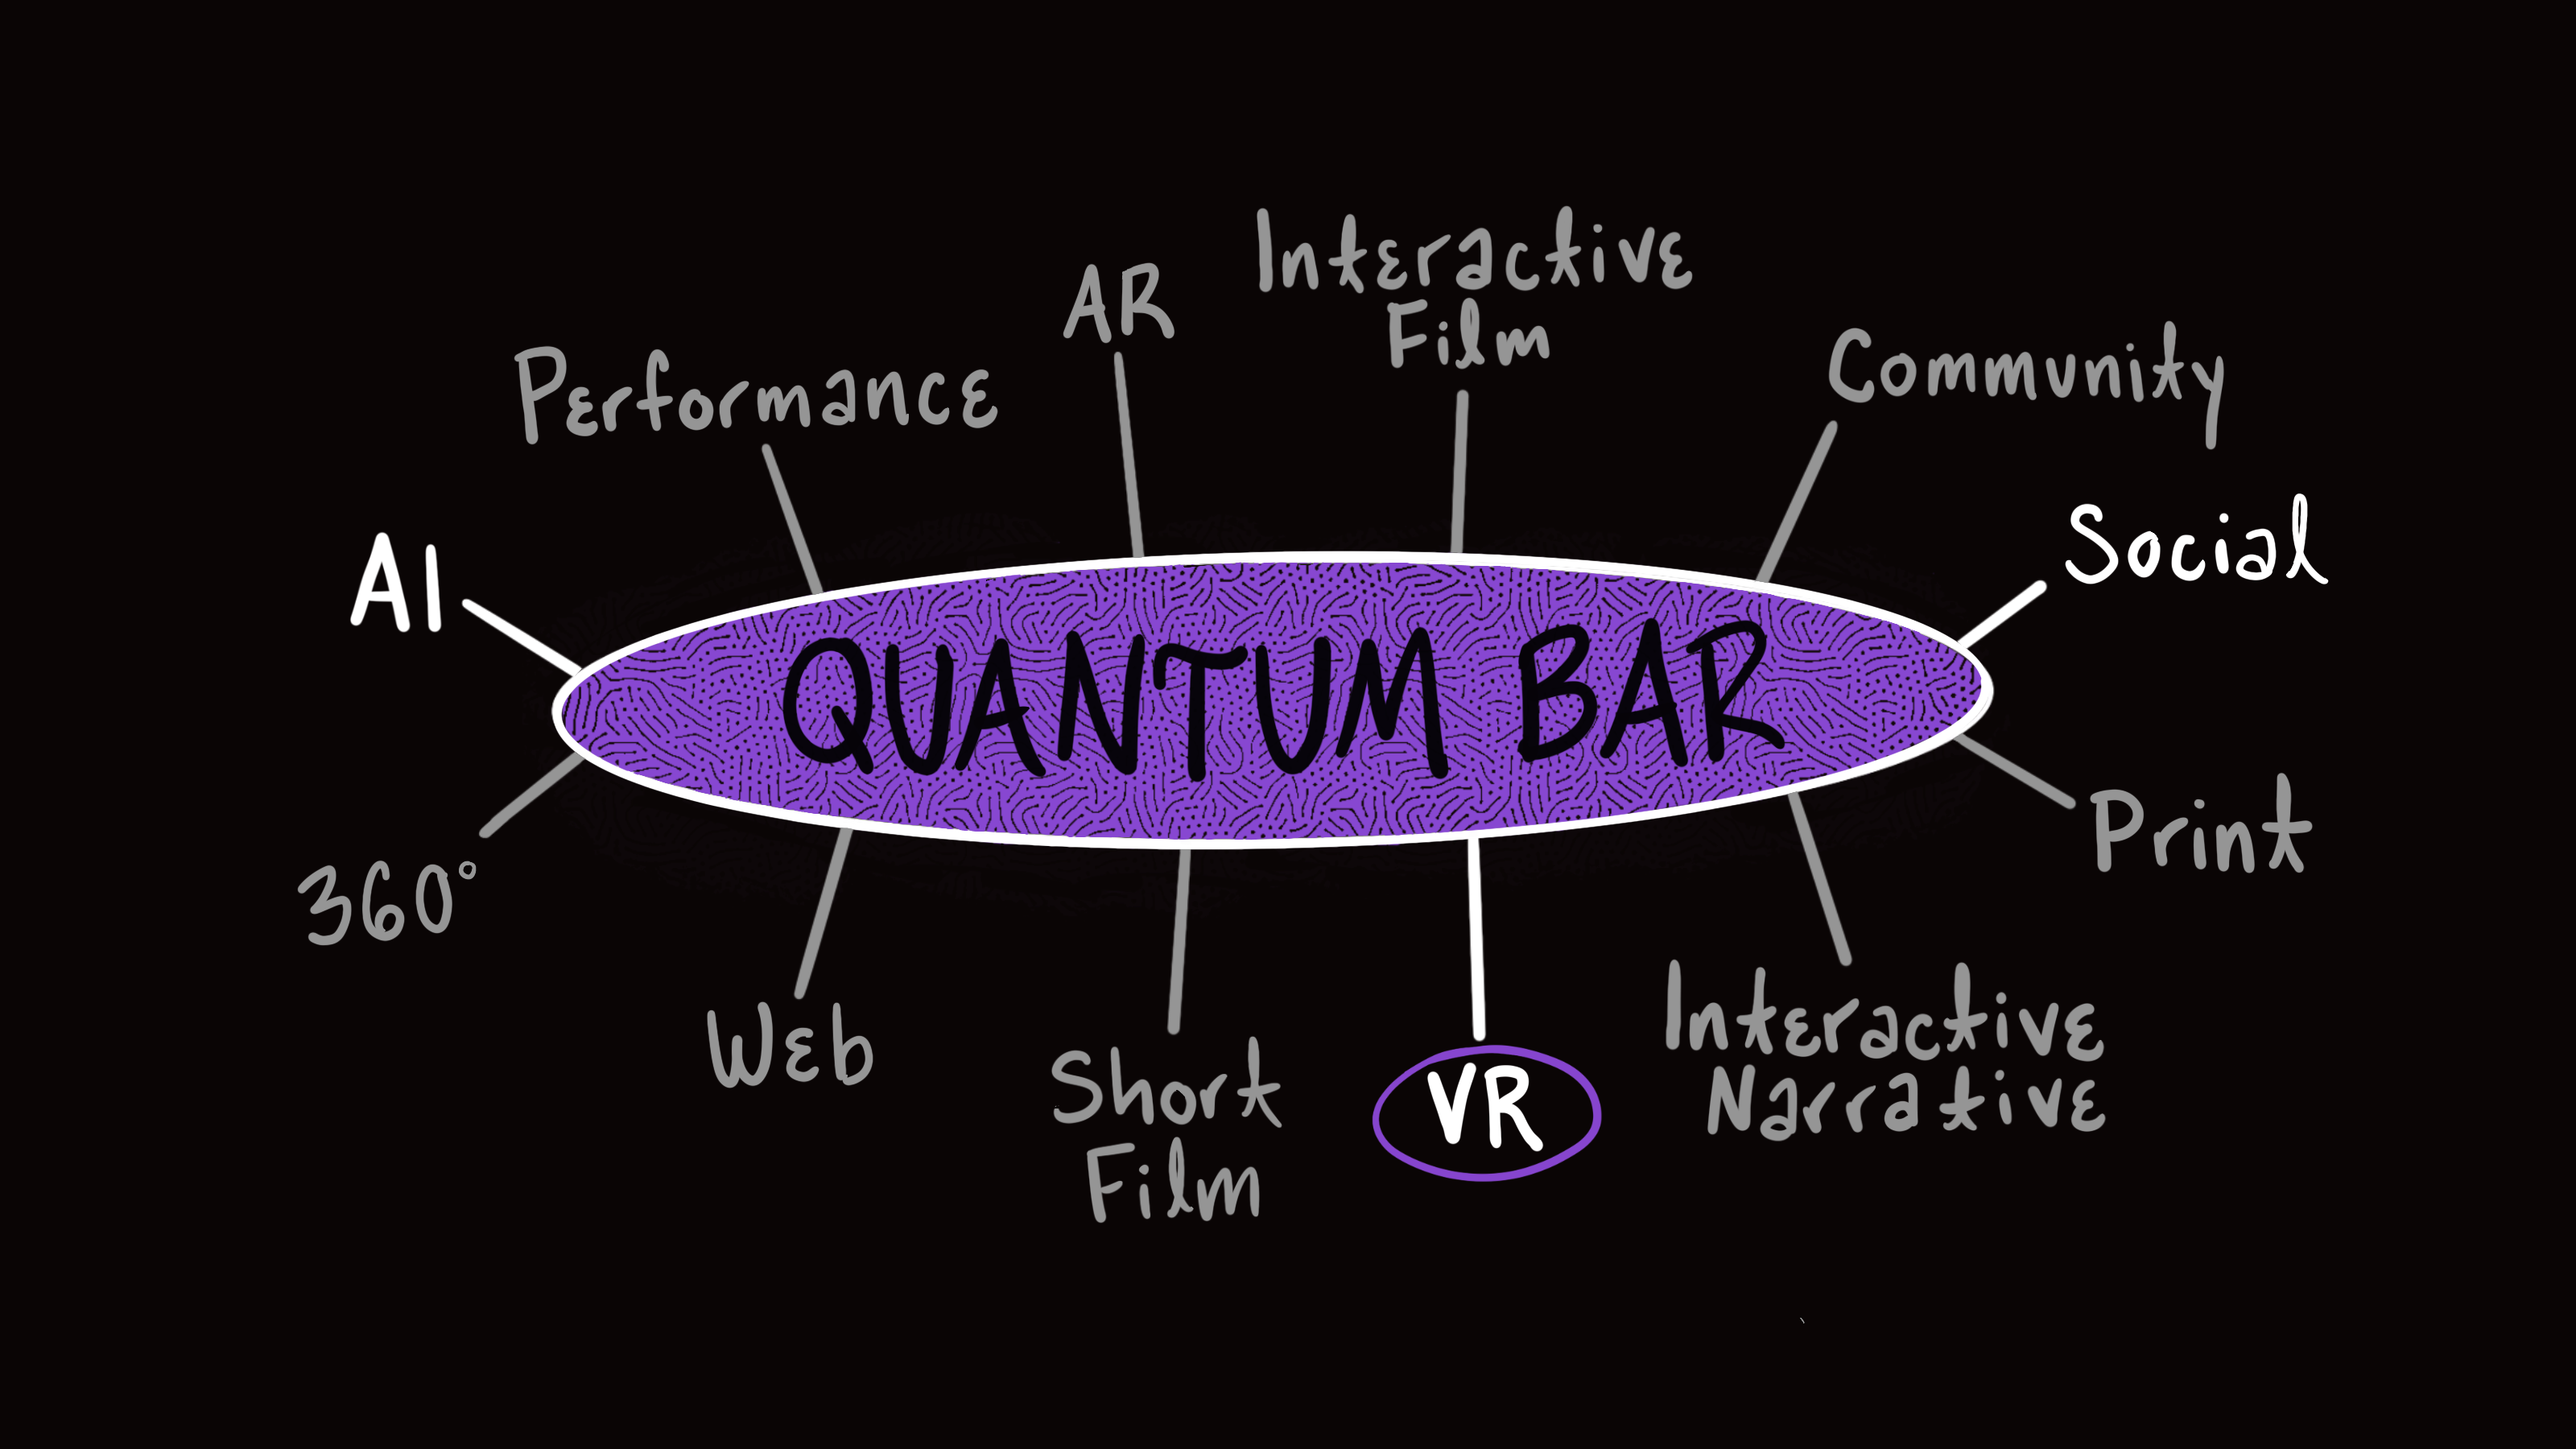 Quantum Bar Project MA Digital Narratives